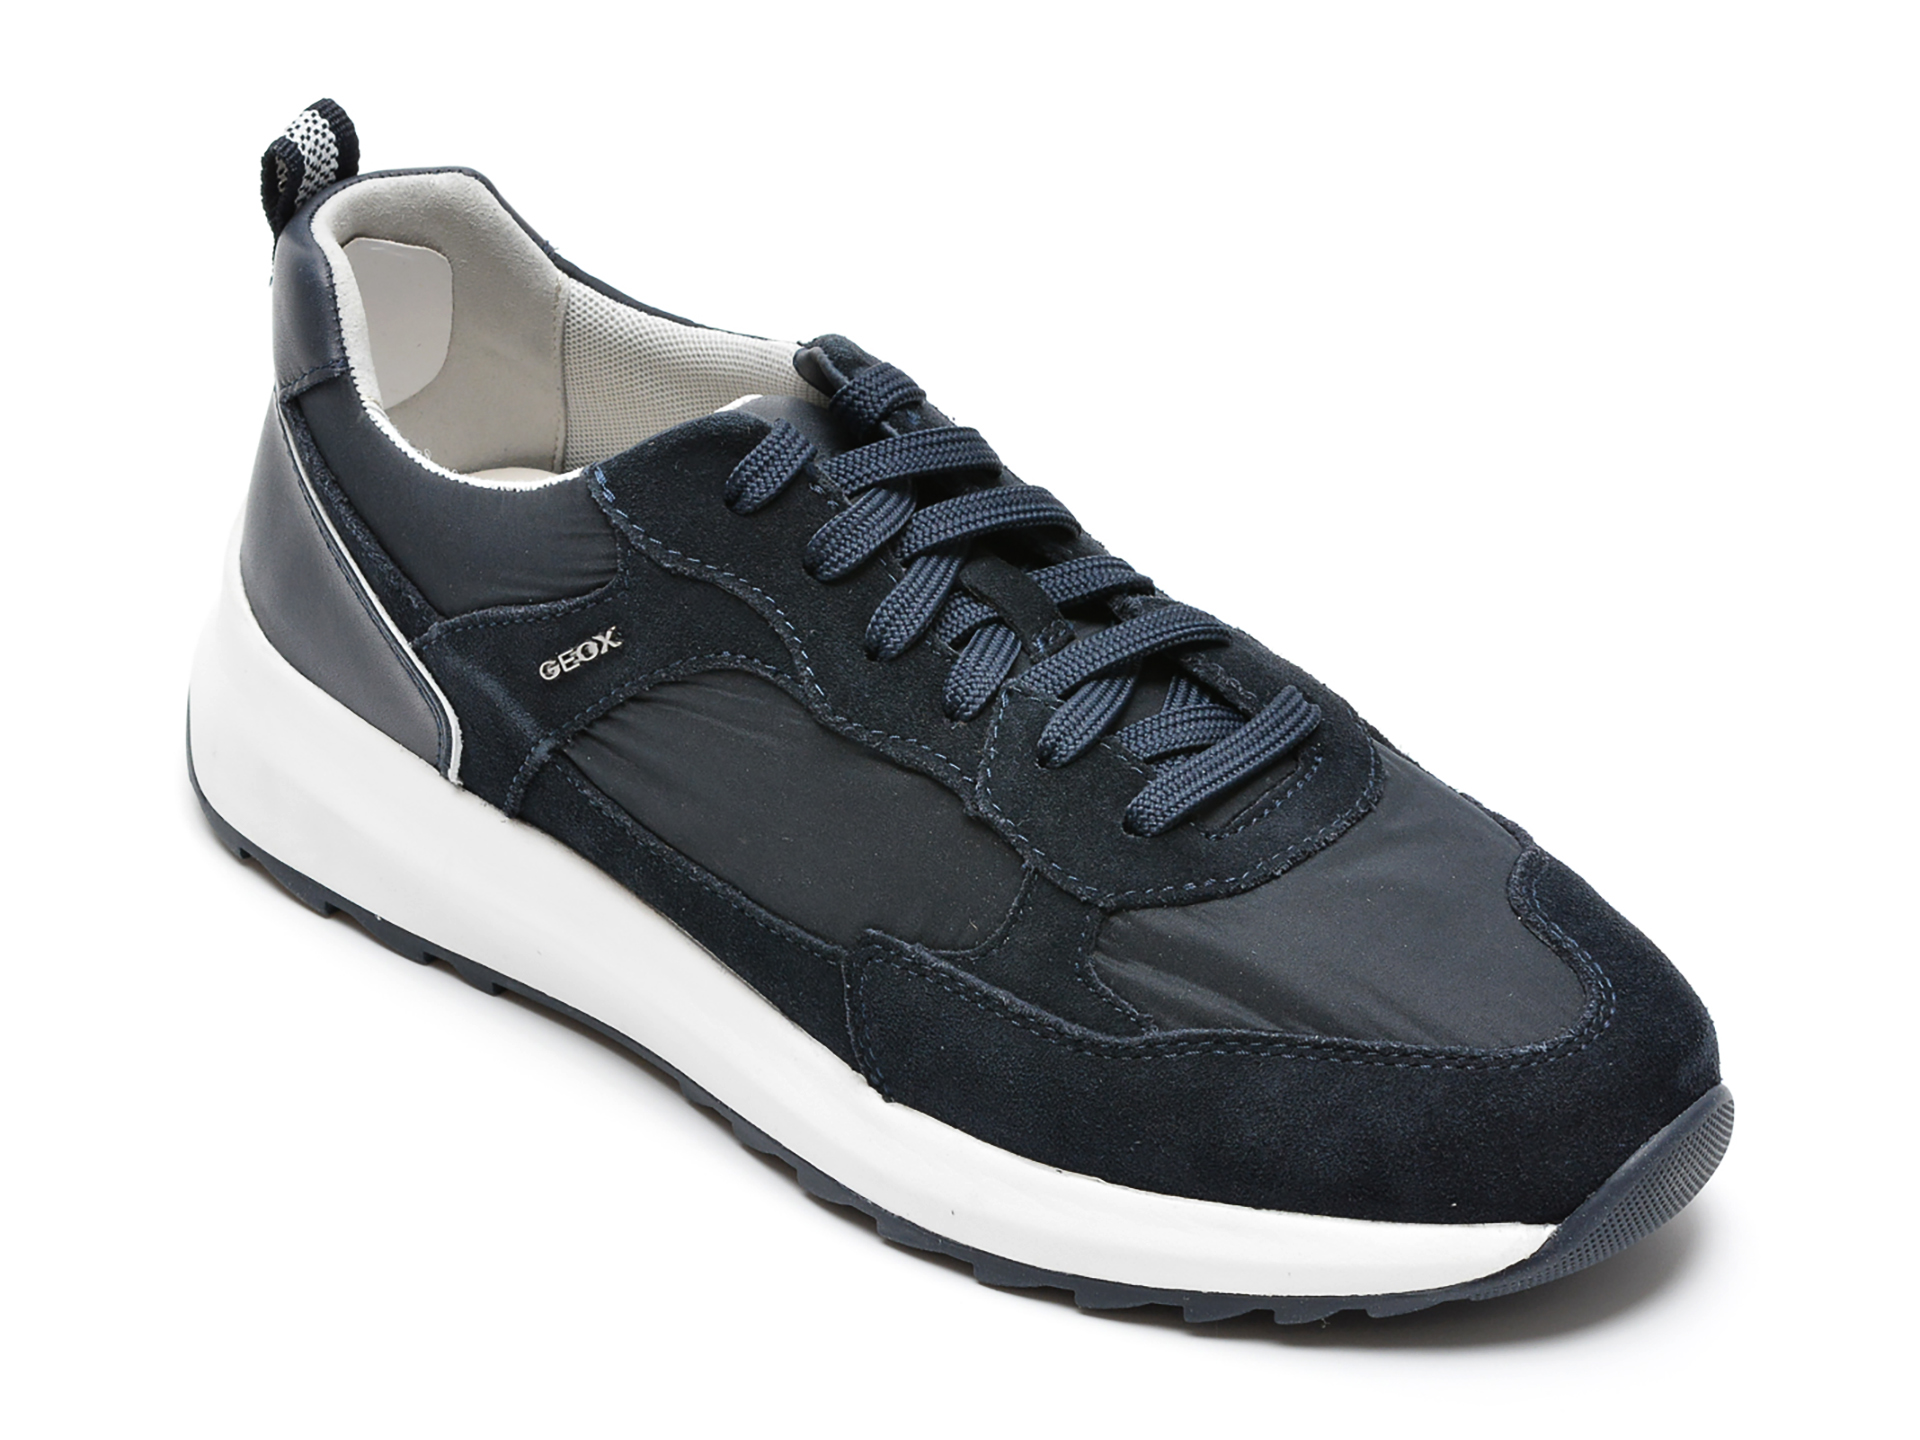 Pantofi sport GEOX bleumarin, U25E4A, din material textil si piele intoarsa Geox